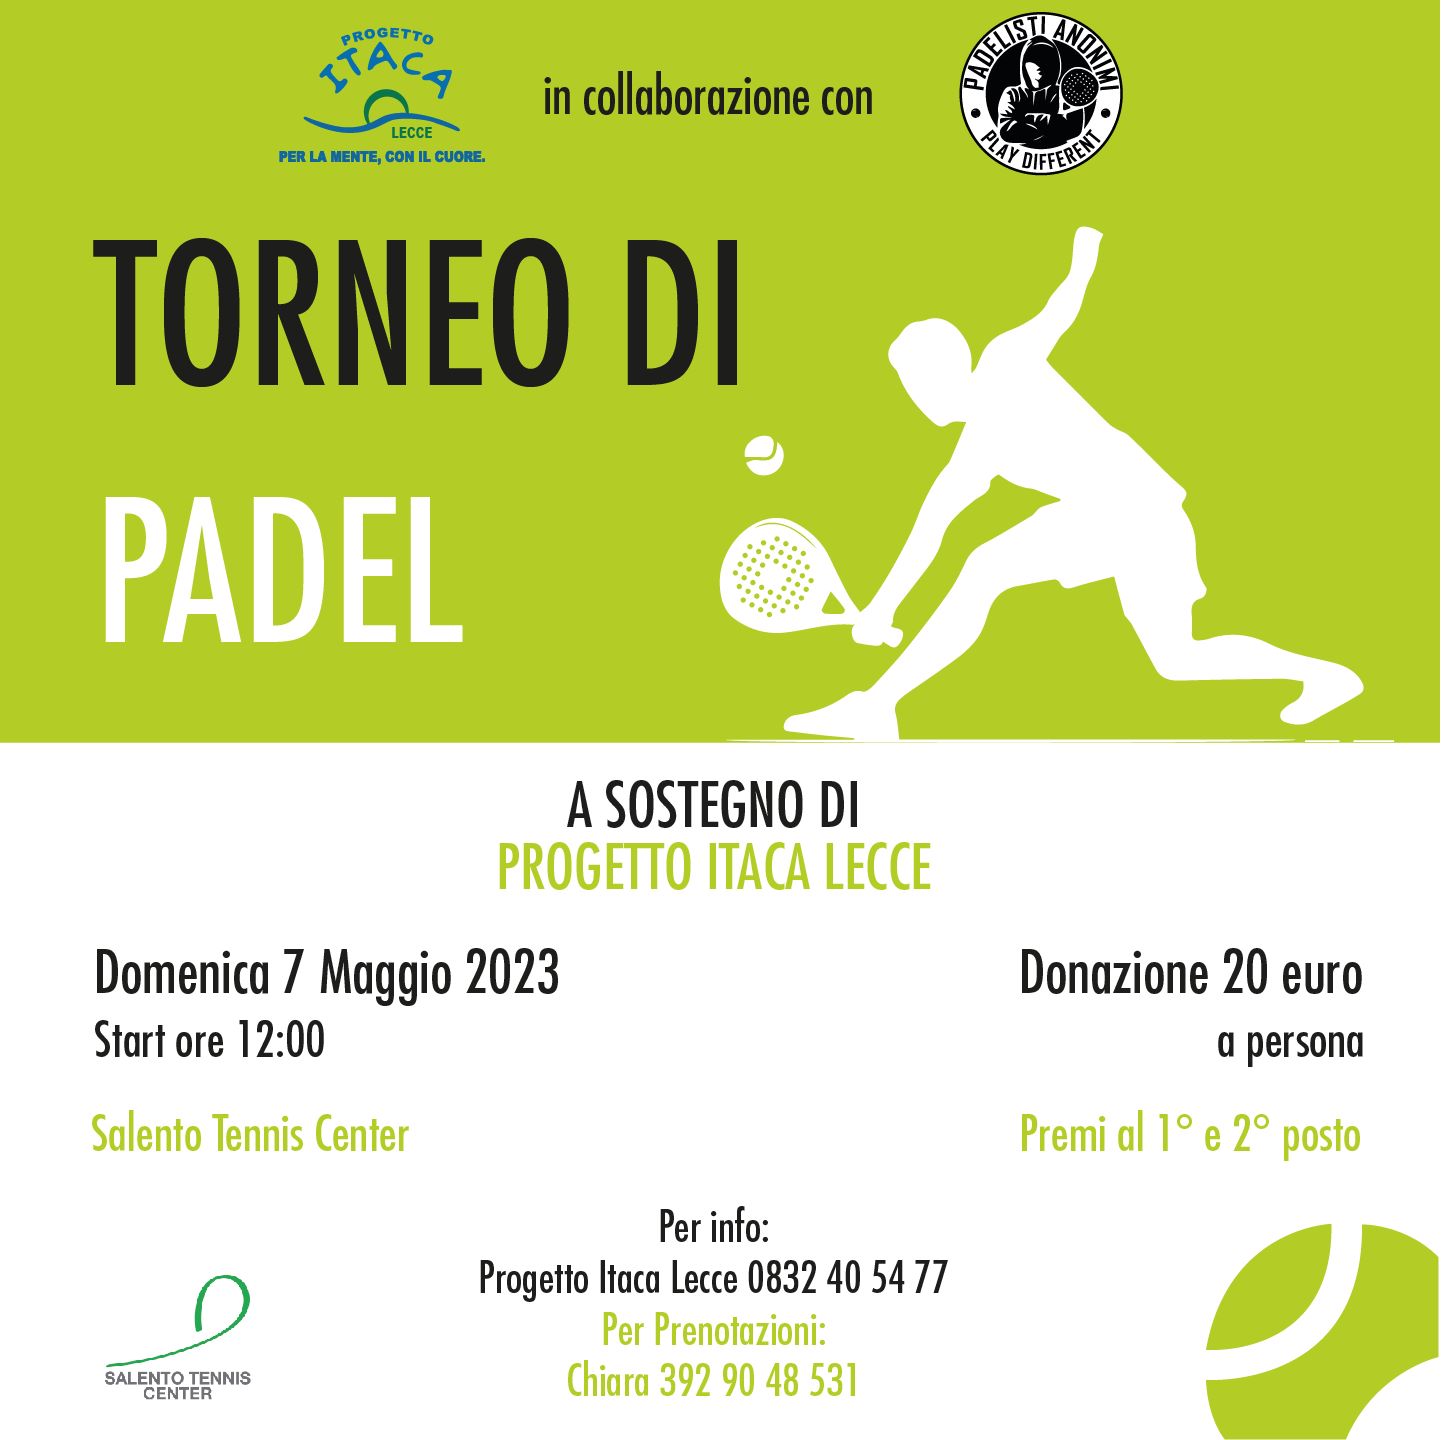 Torneo di Padel a sostegno di Progetto Itaca Lecce